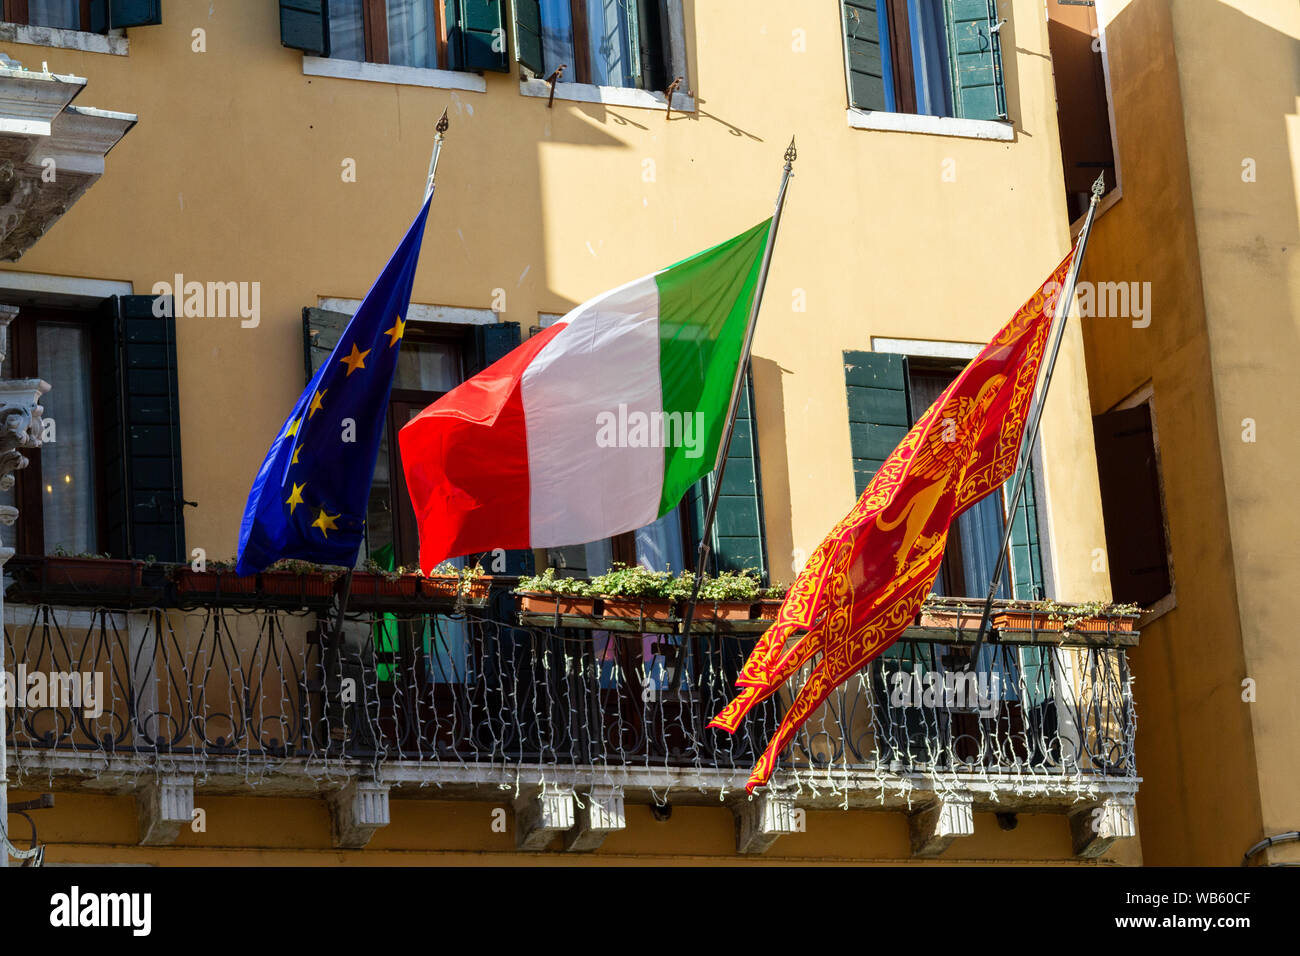 L'italien, l'Union européenne et l'ensemble des drapeaux de Venise. Banque D'Images